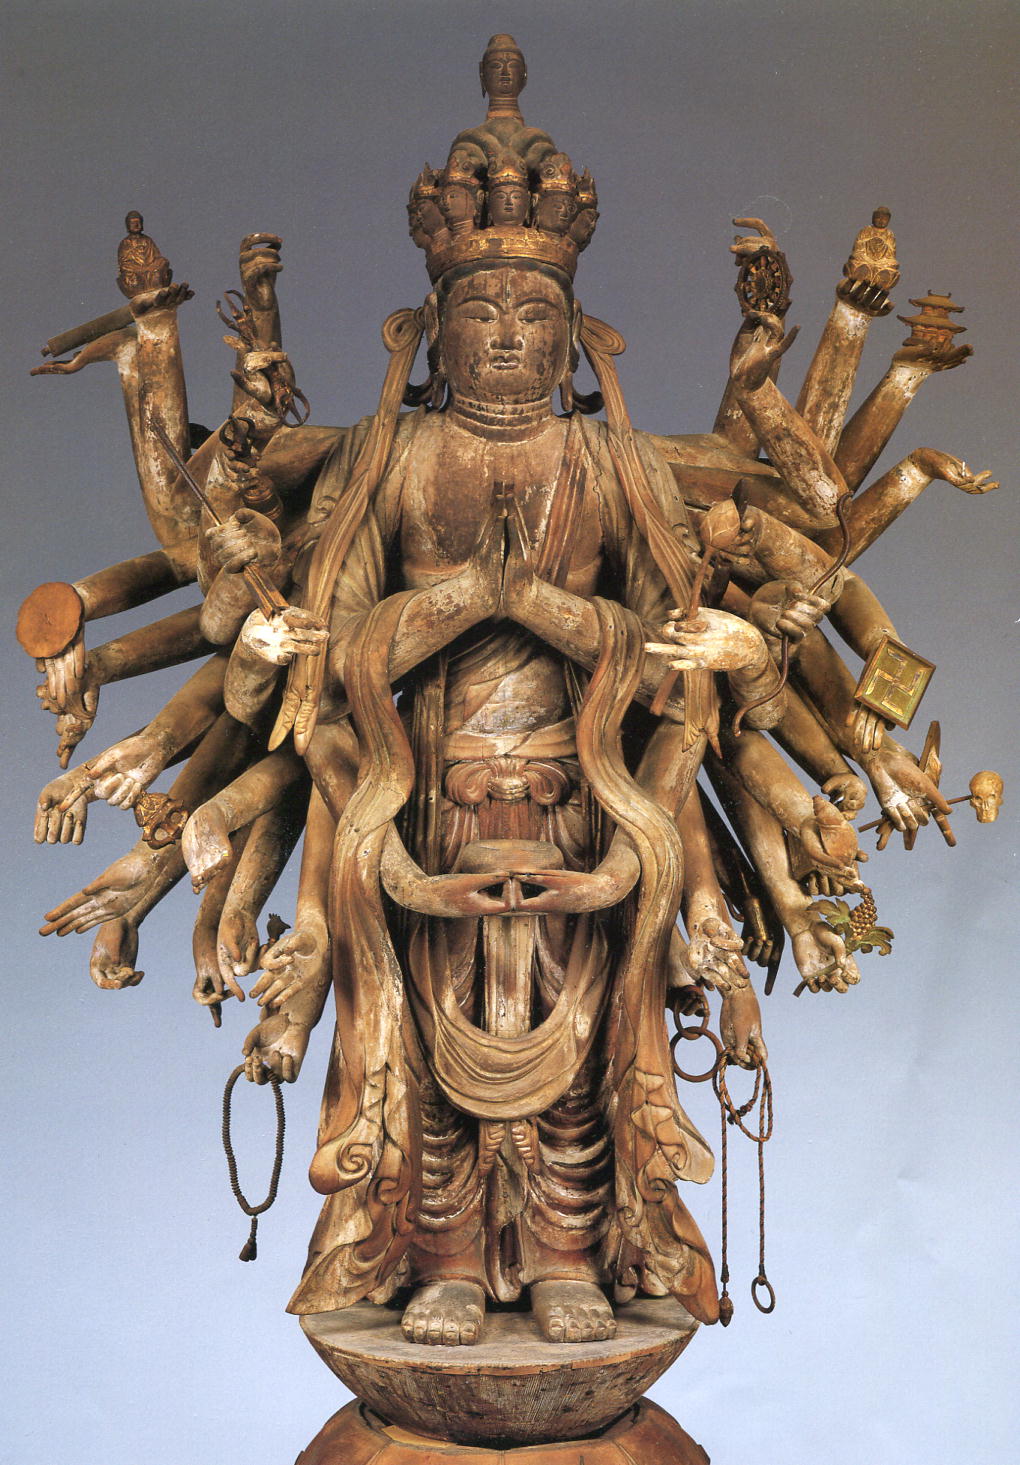 ネット限定】-物 高さ 62cm 重さ 6Kg 仏像 •観世 - pentainternational